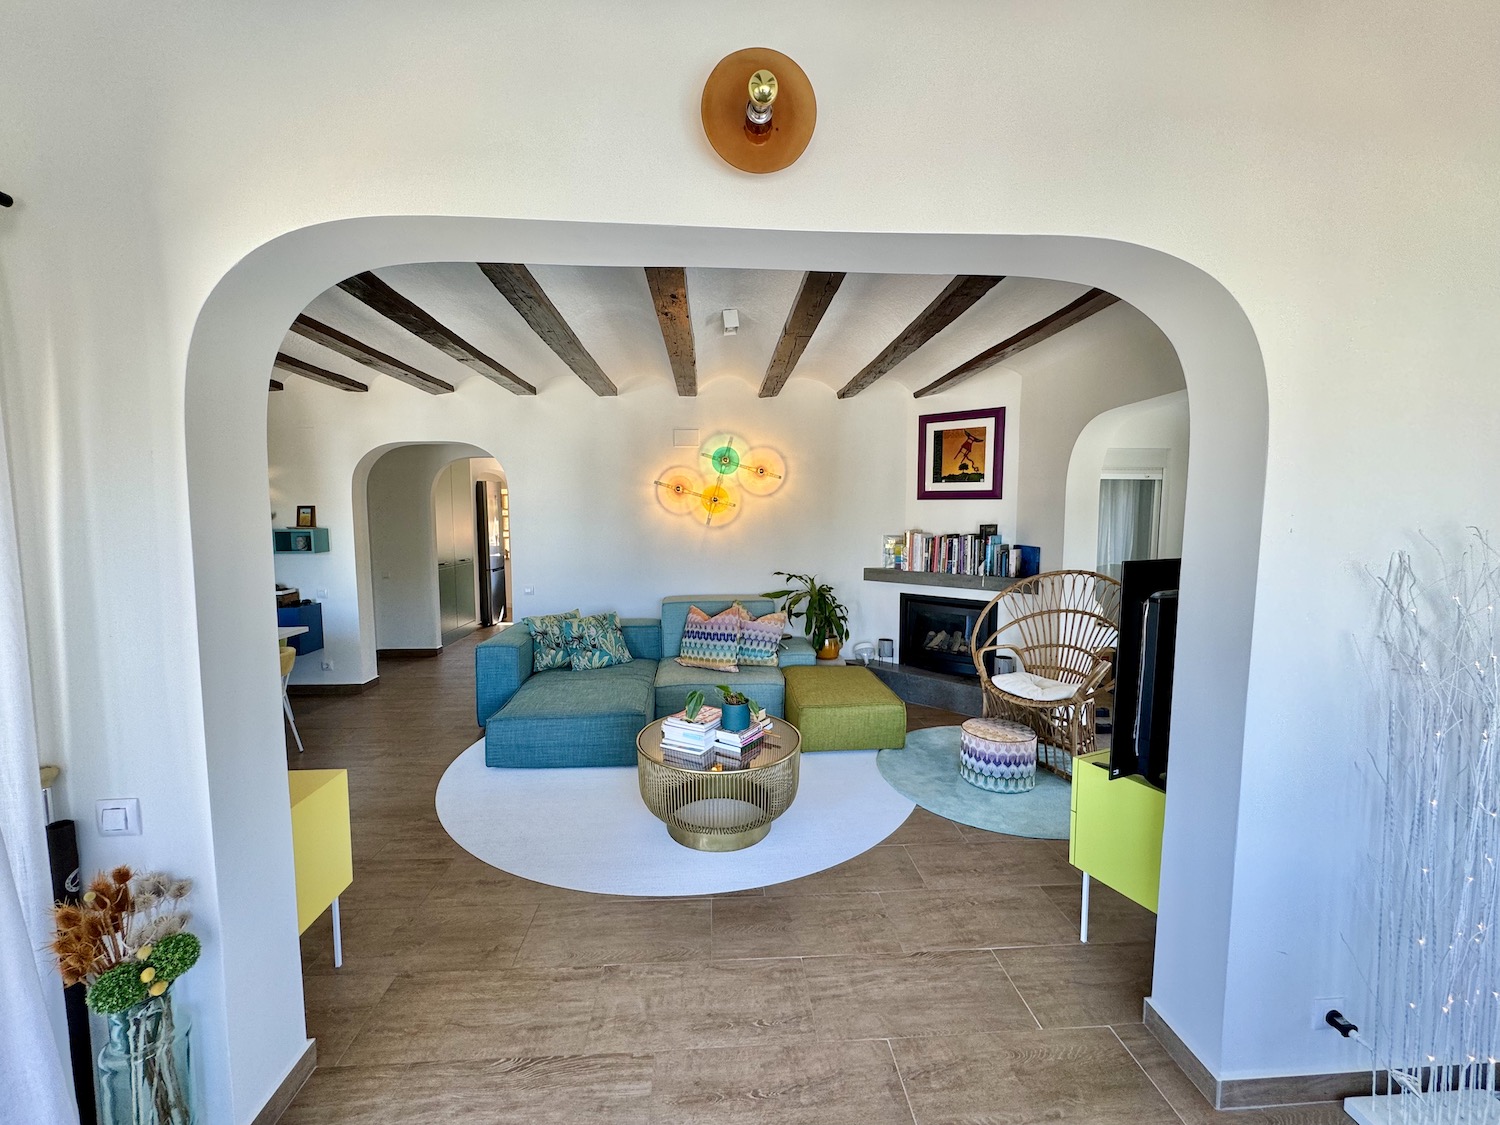 5 Bedroom Villa With Montgo Views